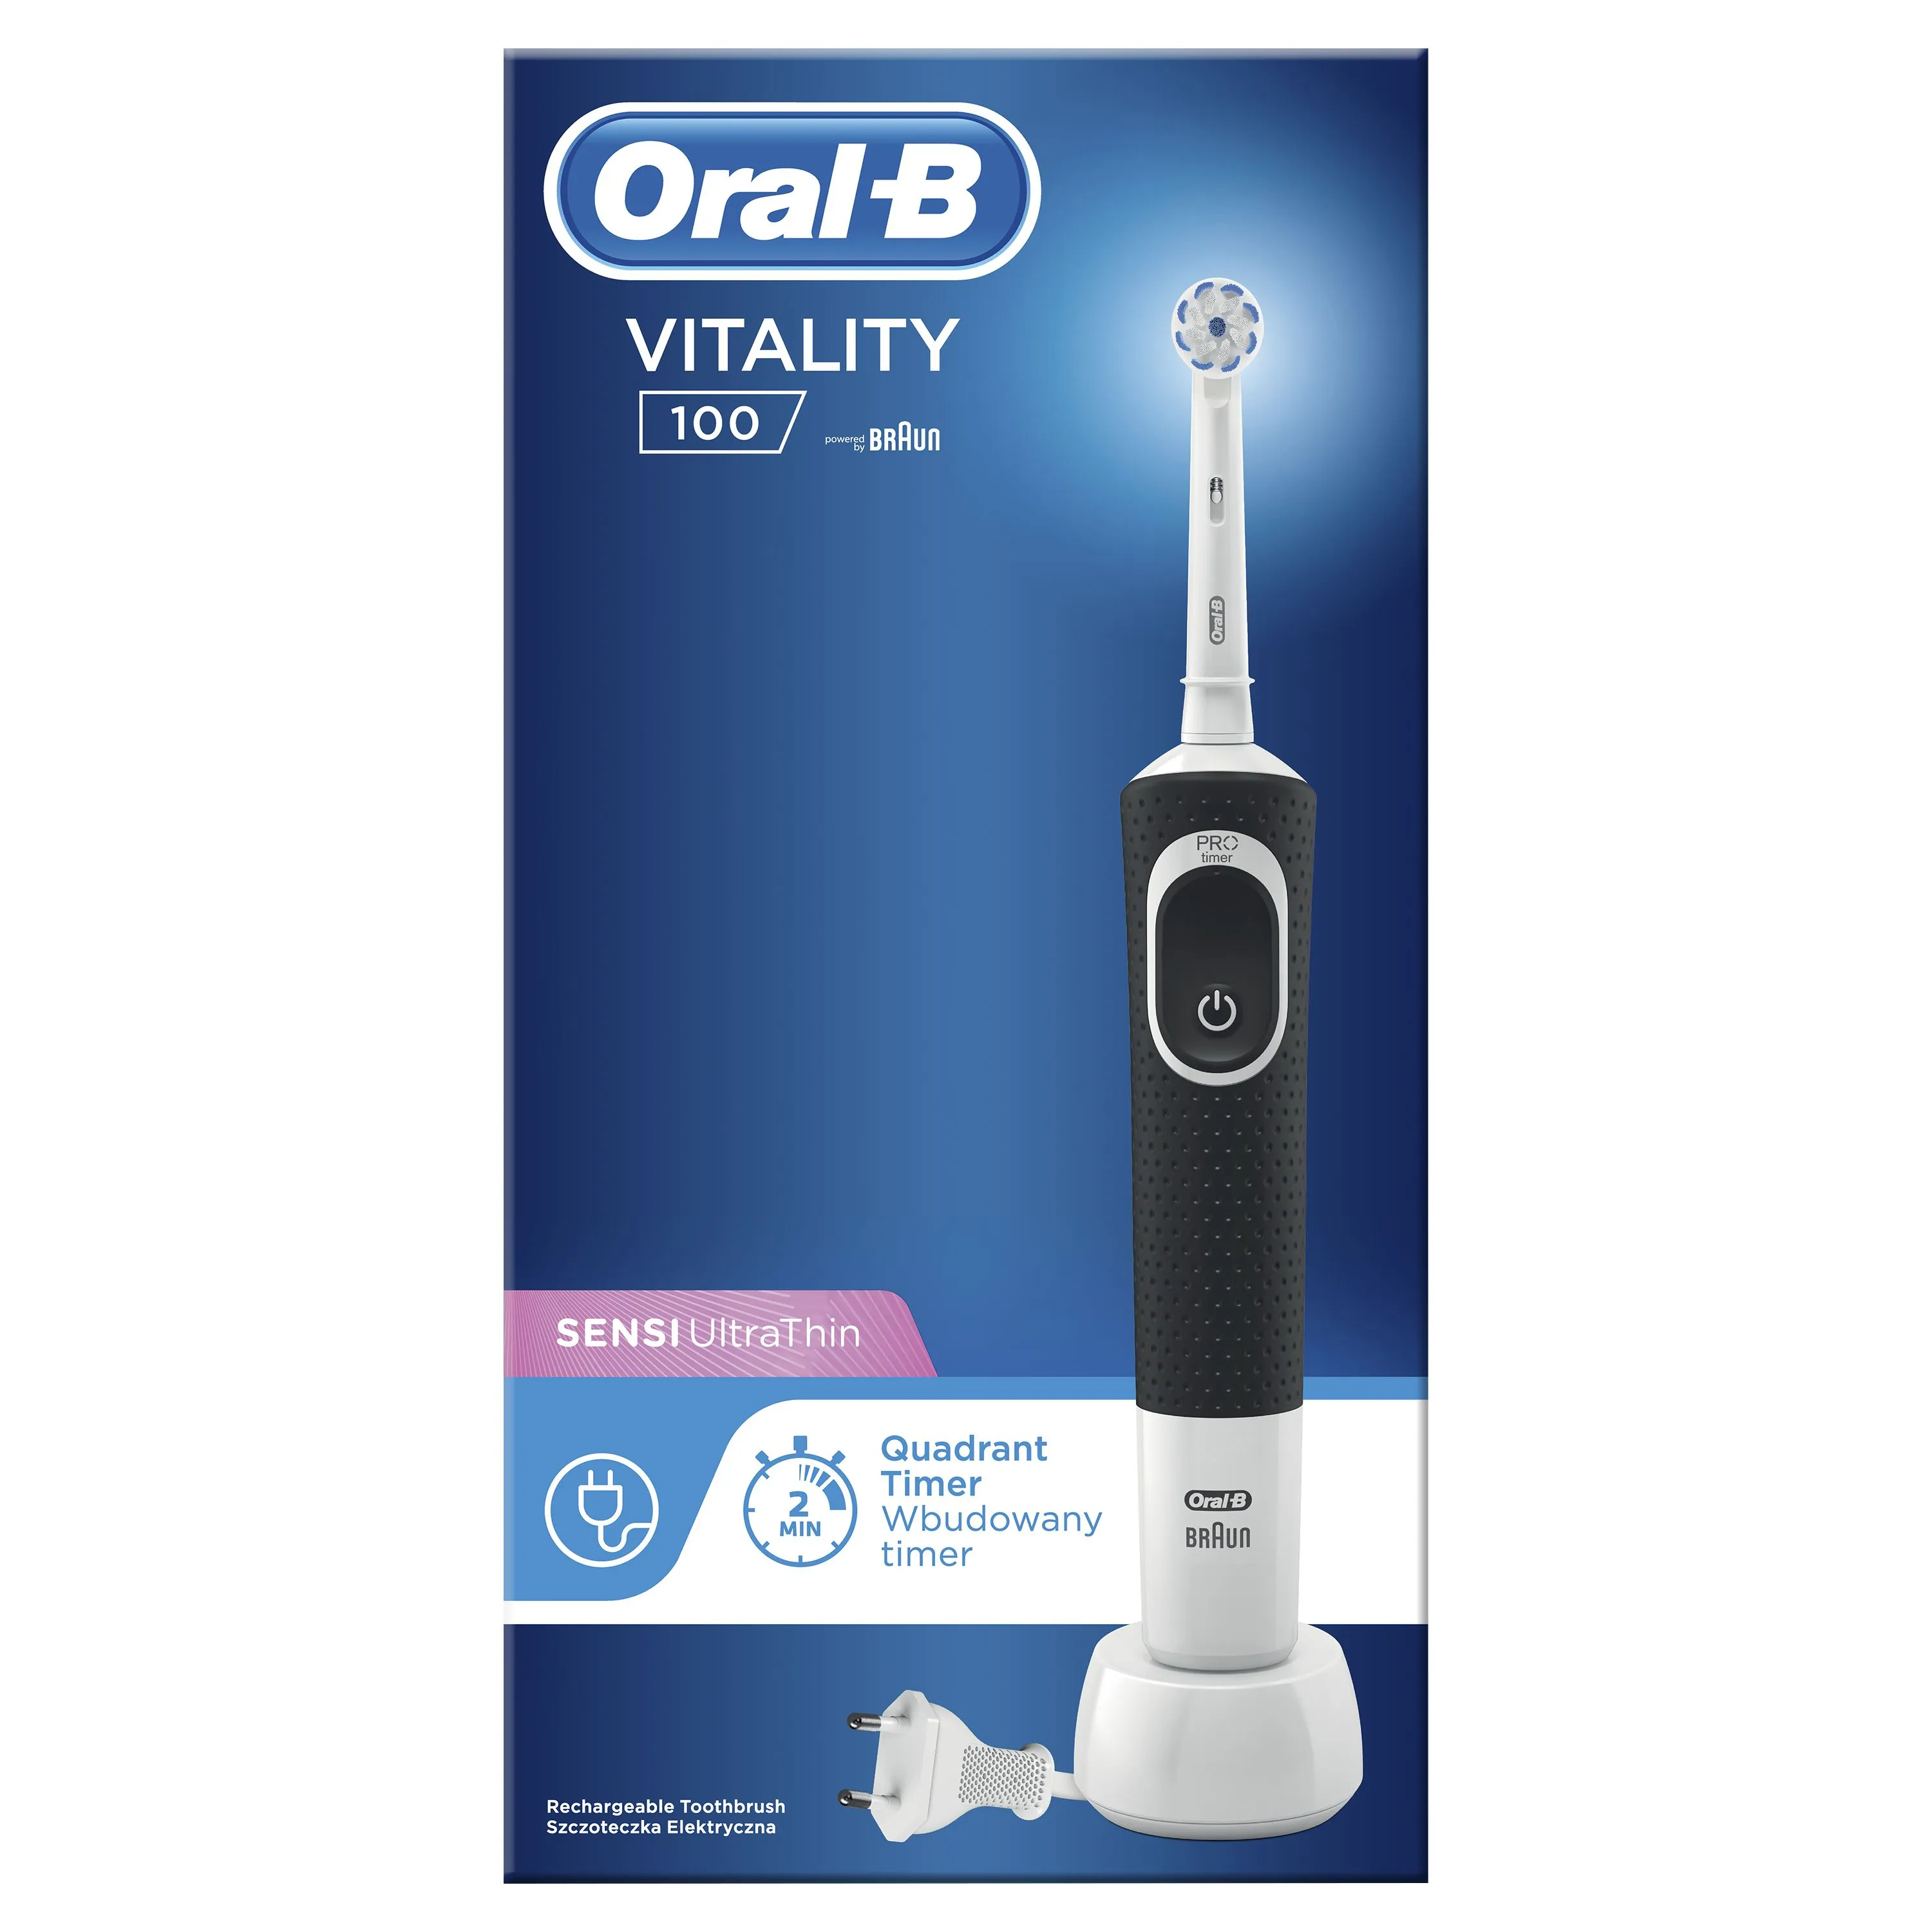 Oral-B Vitality 100 Sensitive Black elektrický zubní kartáček